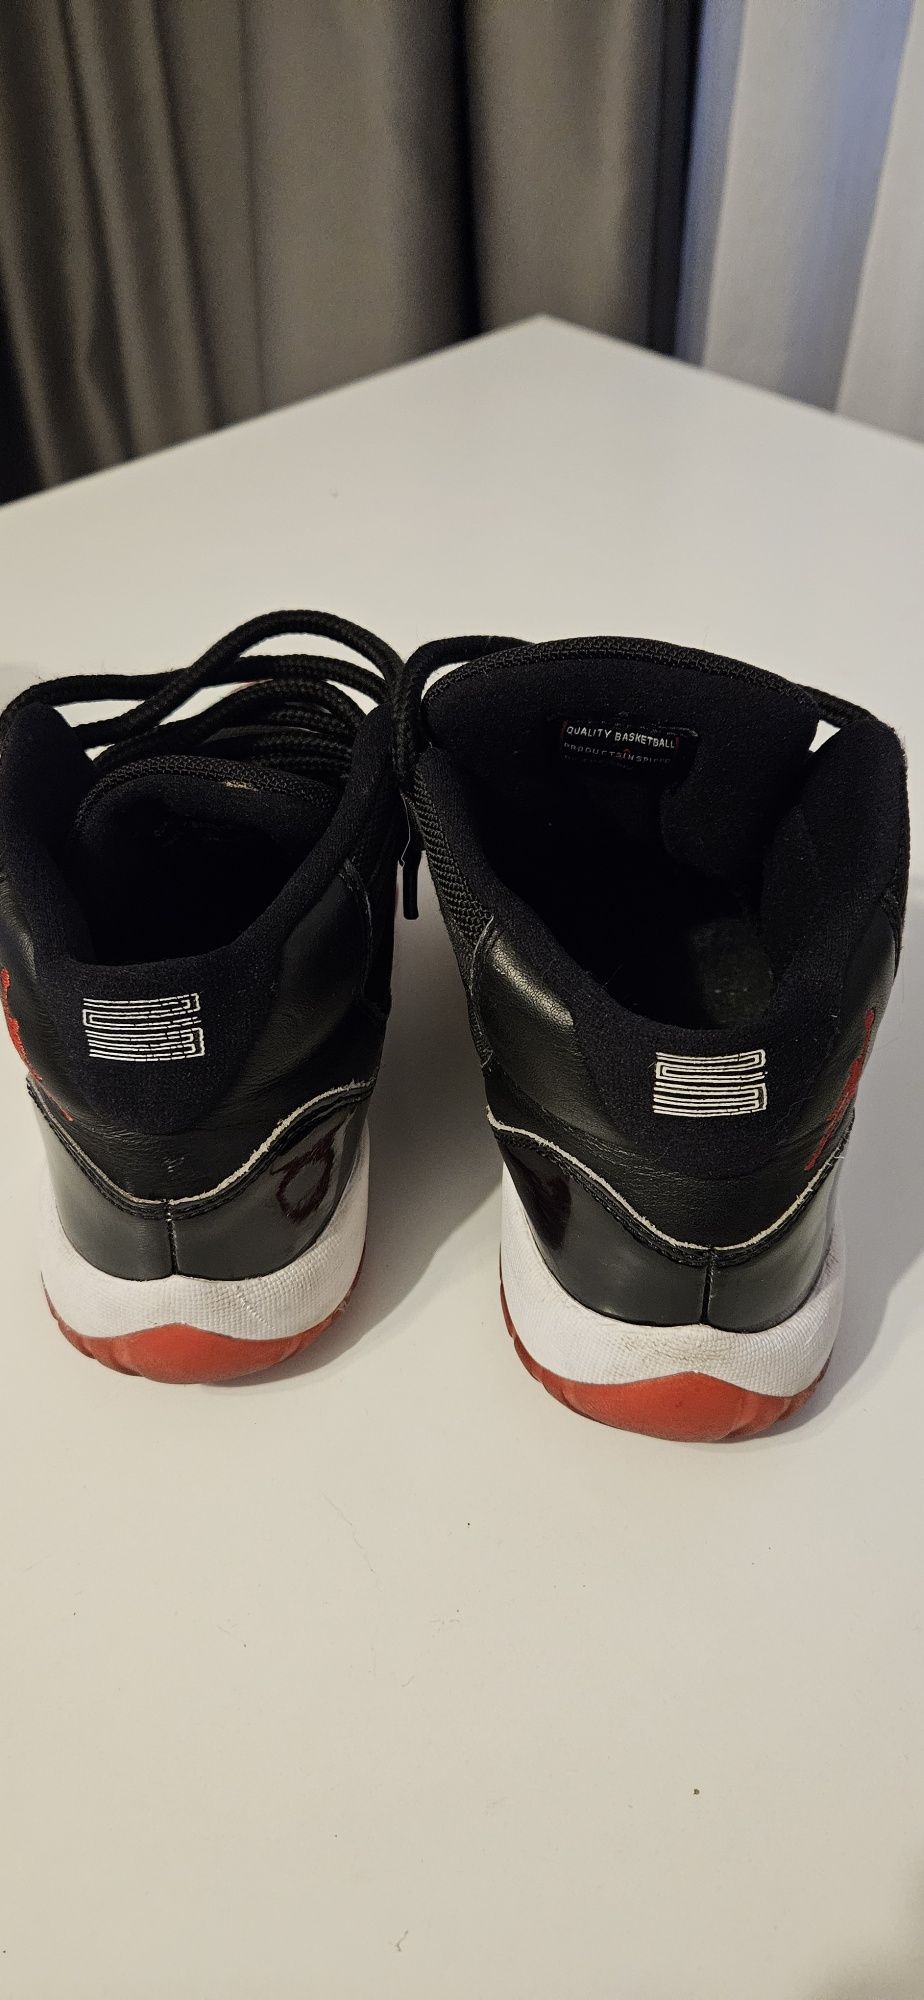 Air Jordan 11 Retro "Bred 2019" sneakers